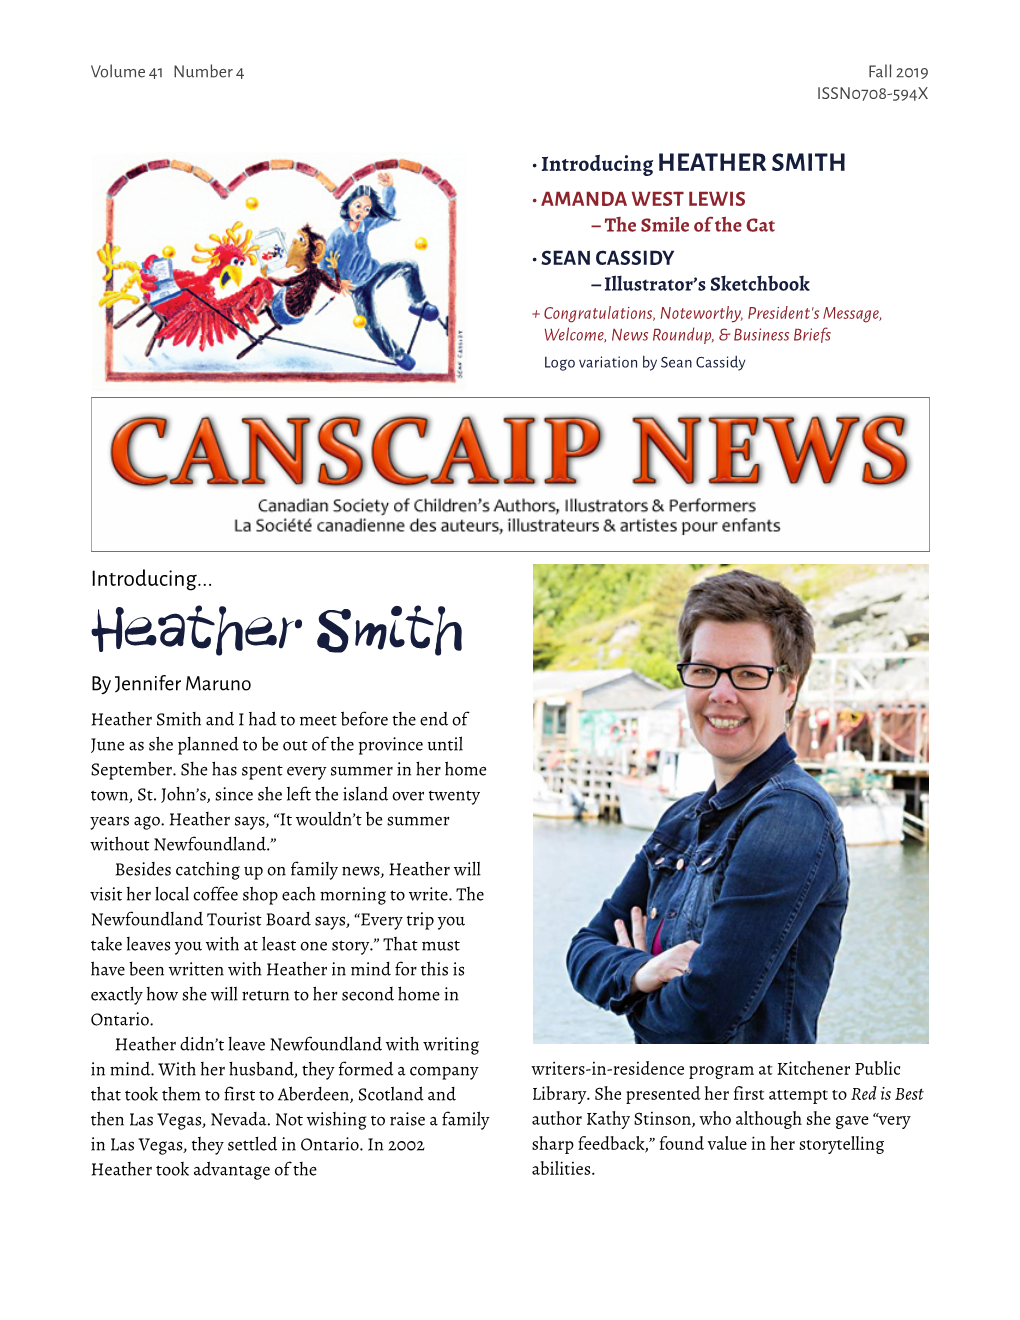 CANSCAIP News Fall 2019 V2